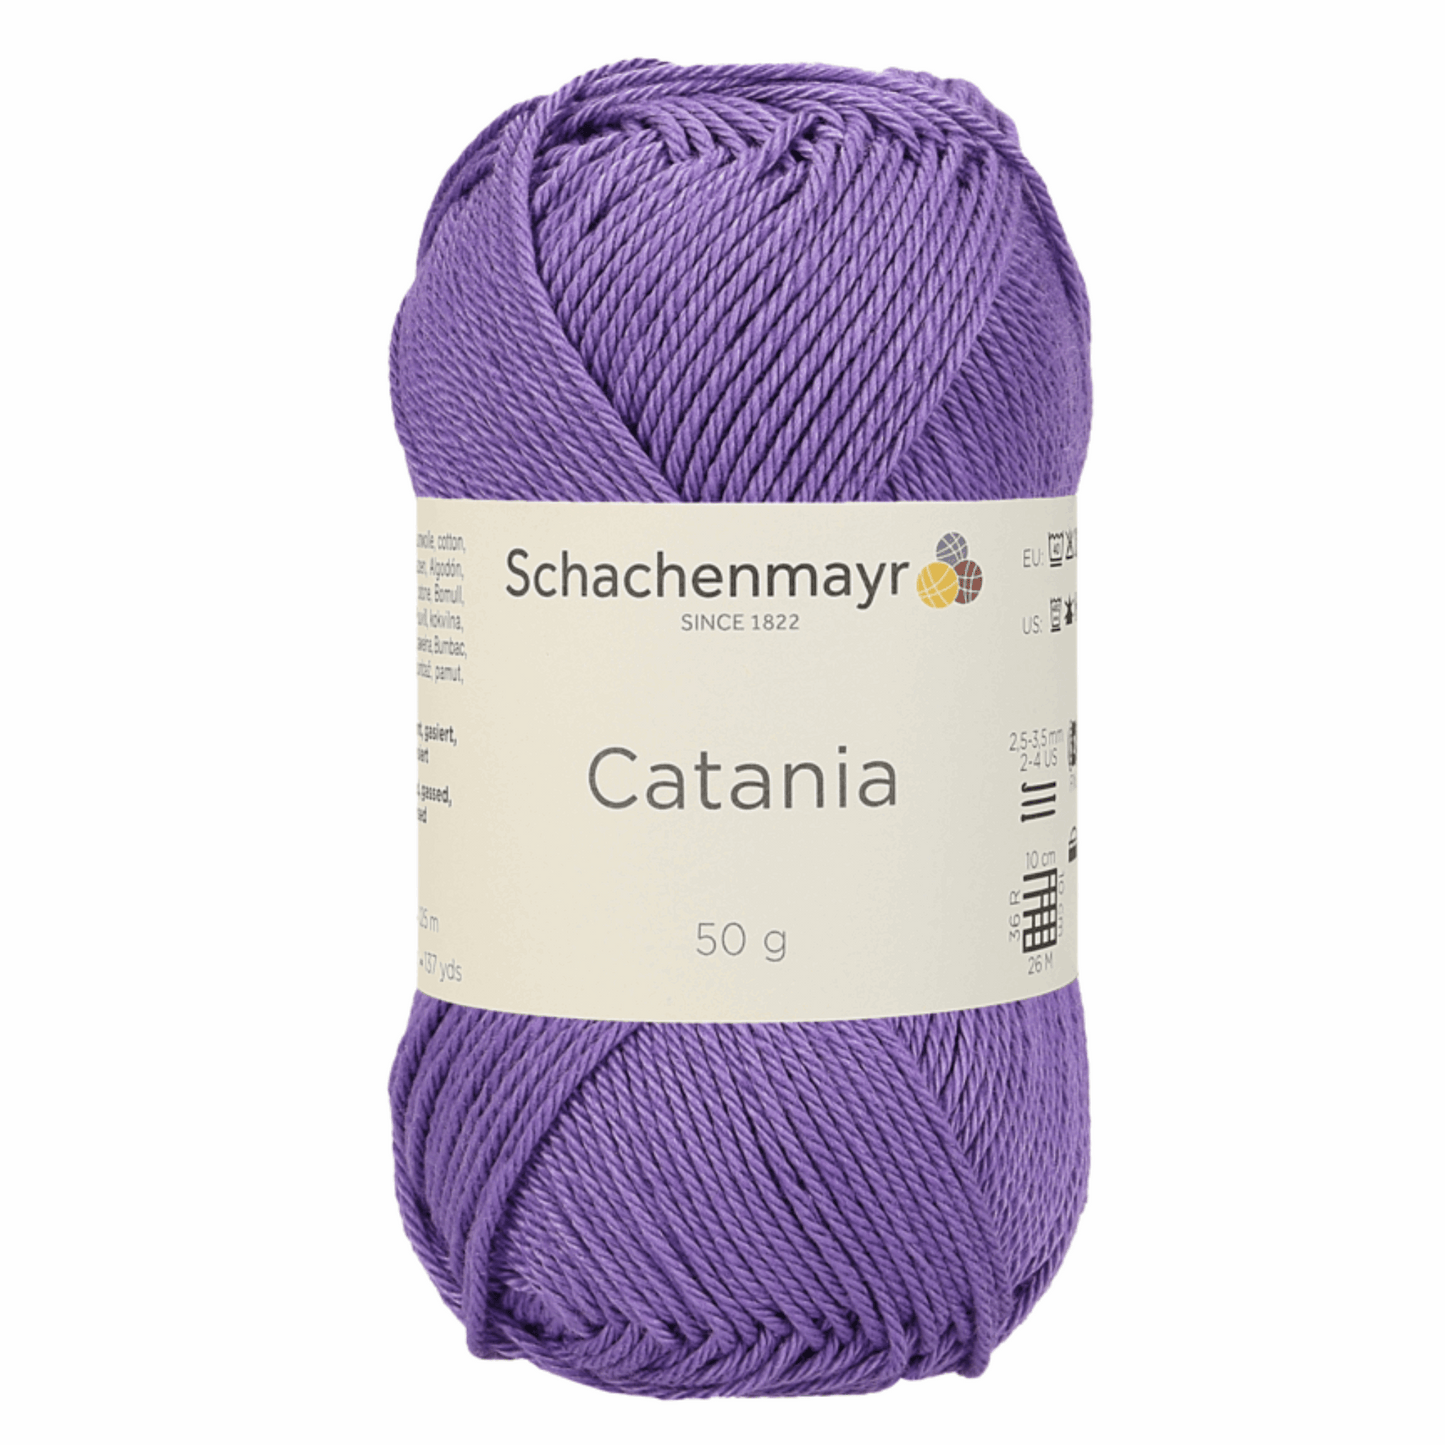 Catania 50g, 90344, color 113, violet